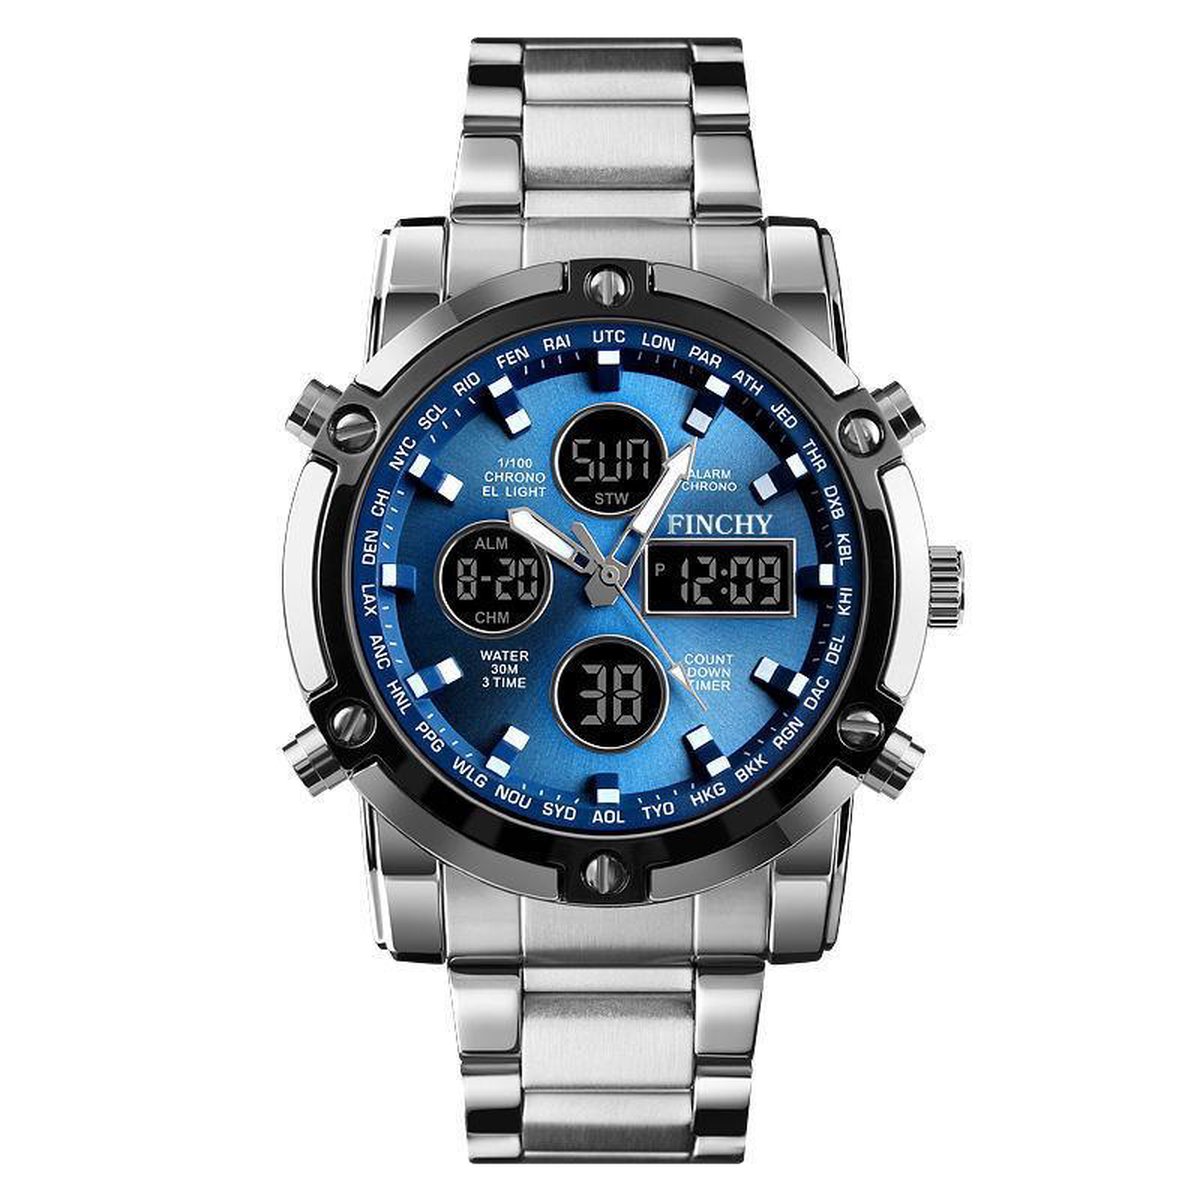 Horloges voor mannen - Blauw met Roestvrijstaal Design - Heren Horloge - Waterdicht - +Horlogeband versteller - Verschillende Varianten - Finchy